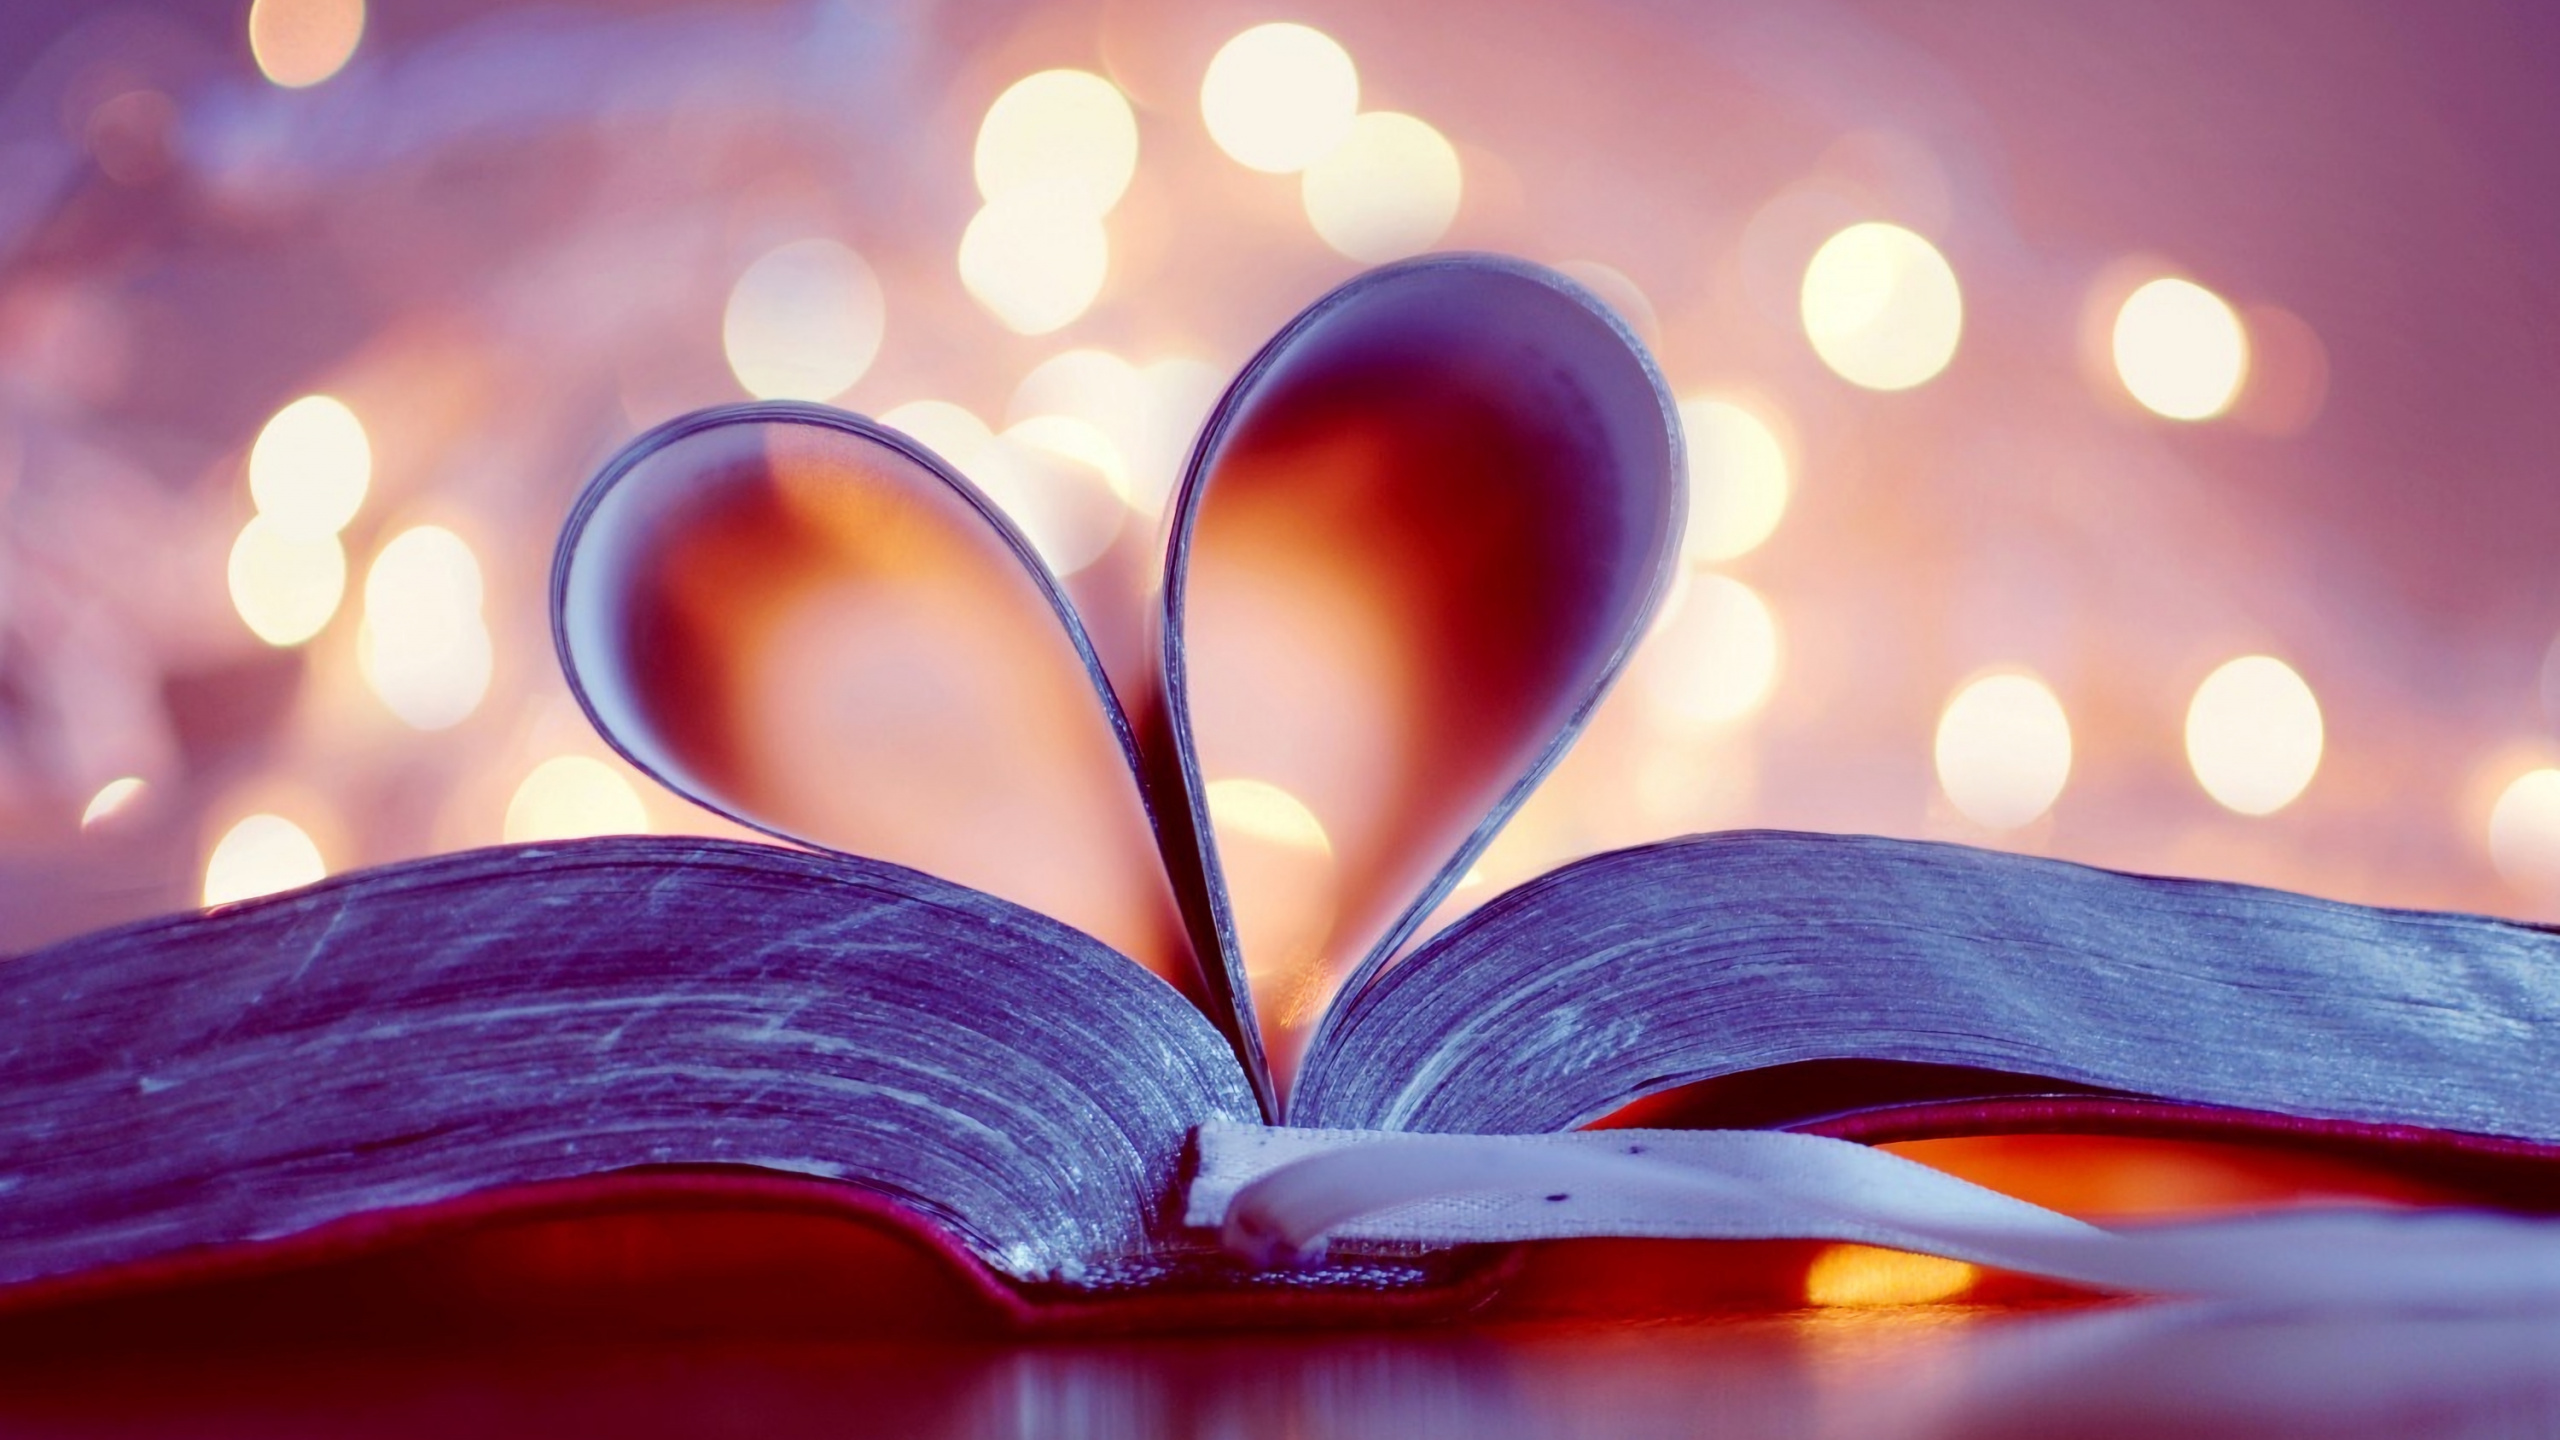 本书, 页面, 心脏, 爱情, 紫色的 壁纸 2560x1440 允许